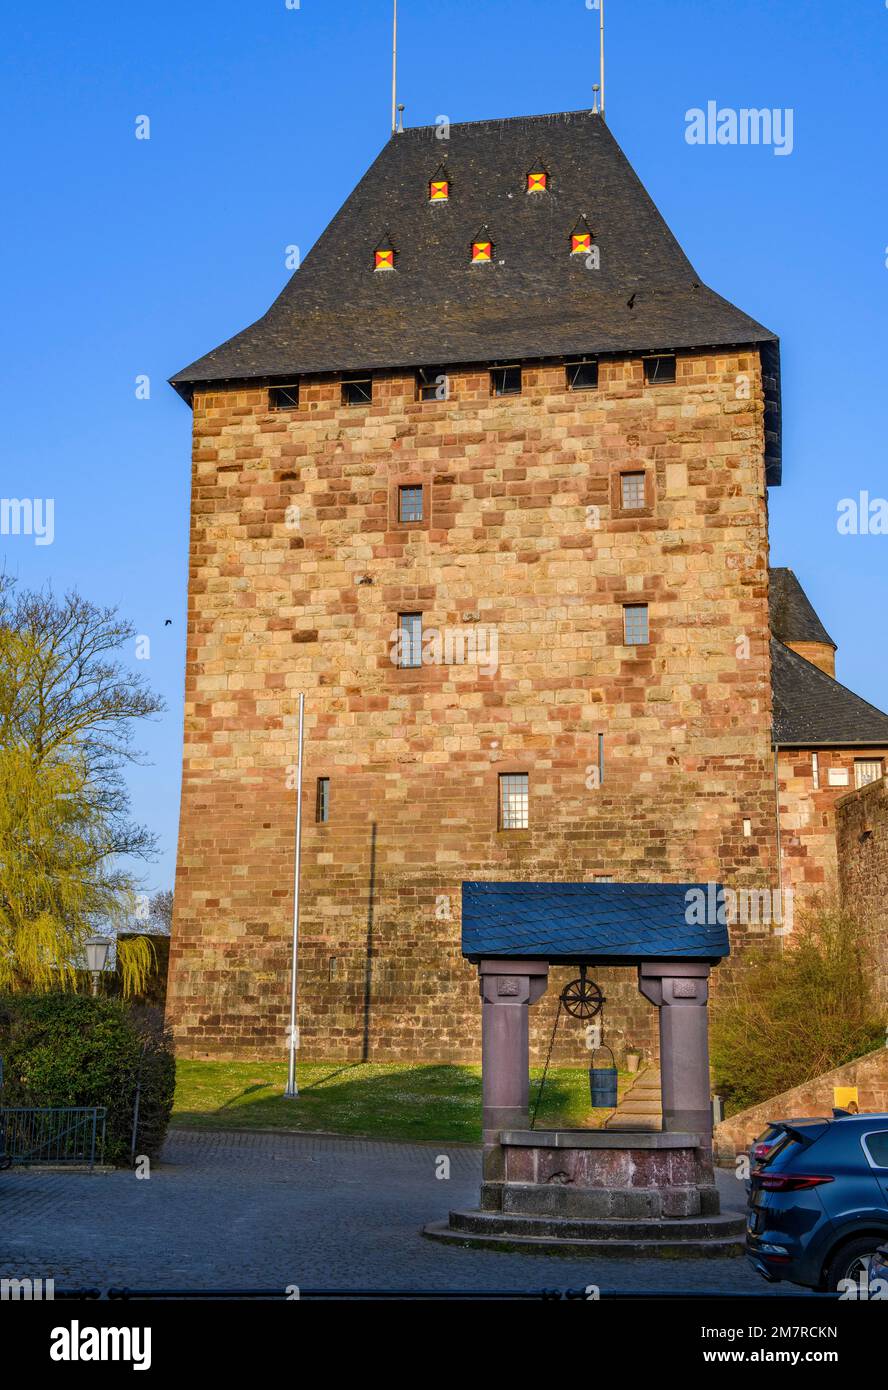 Historischer ehemaliger Wohnturm der Burg Nideggen aus dem 12. Jahrhundert heute das erste Schlossmuseum in Nordrhein-Westfalen, direkt davor Stockfoto